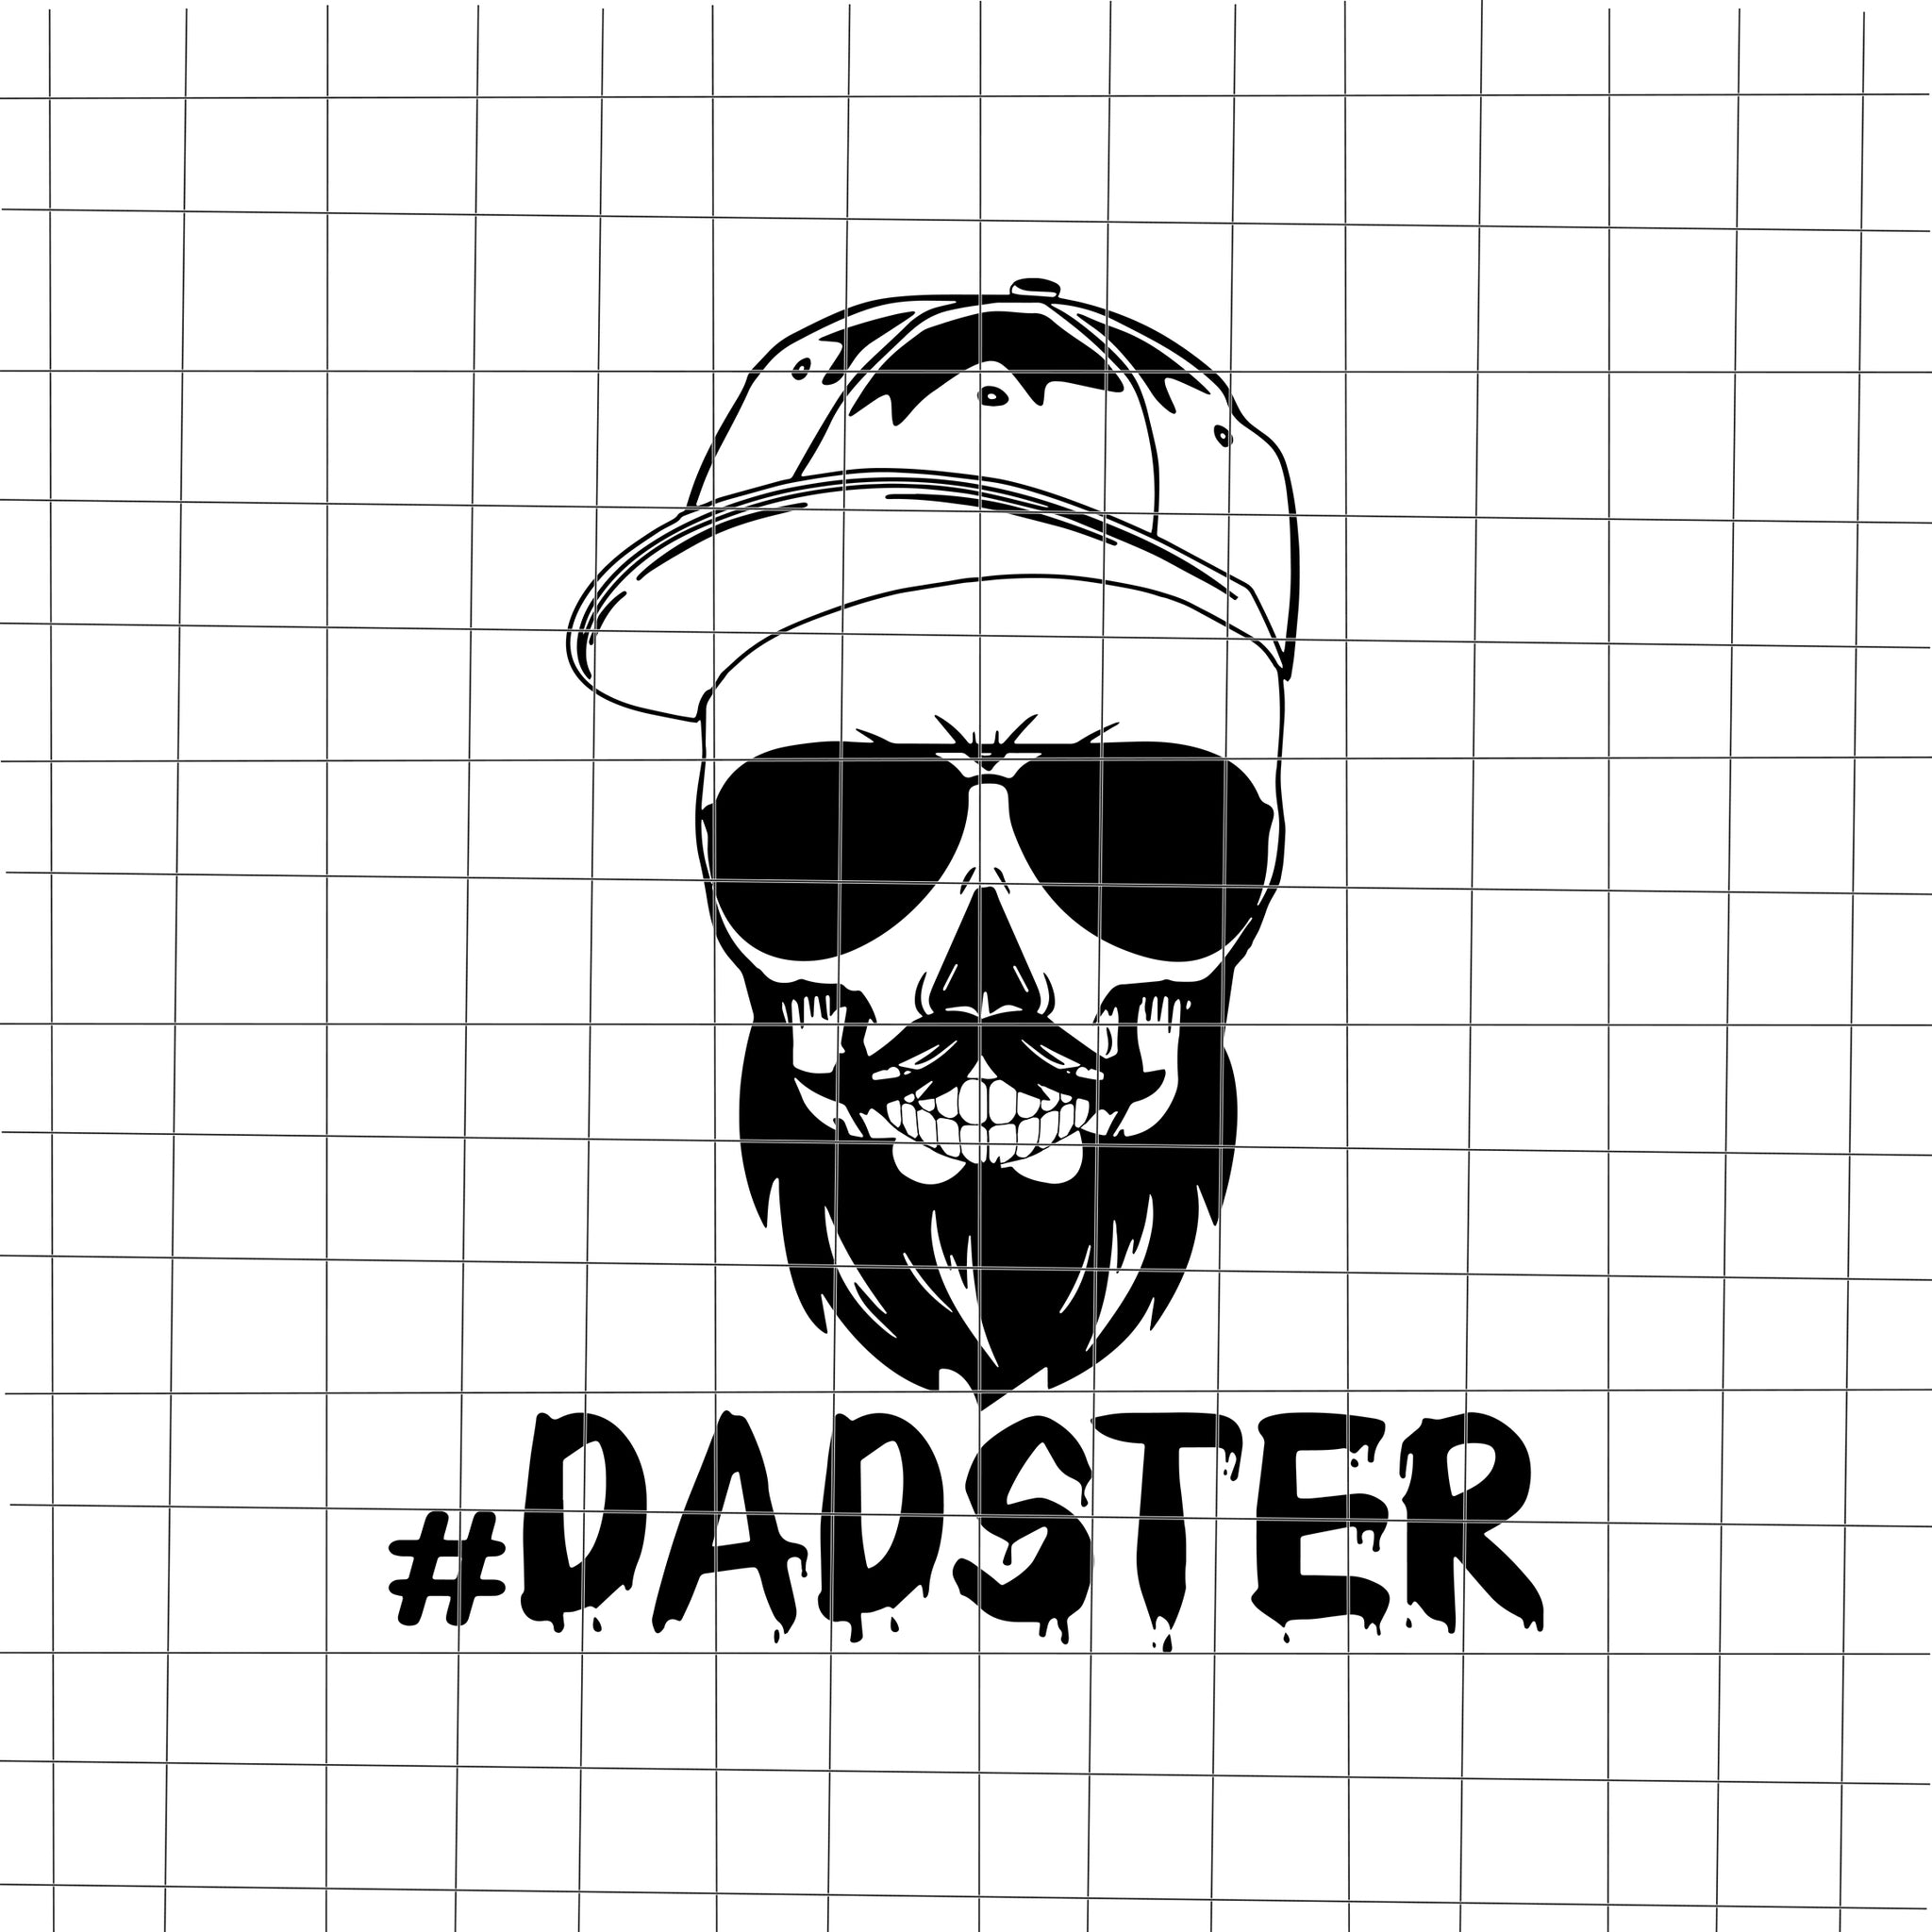 Dadster Svg, Monster Dad Svg, Daddy Svg, Father Men Funny Halloween, Halloween Svg